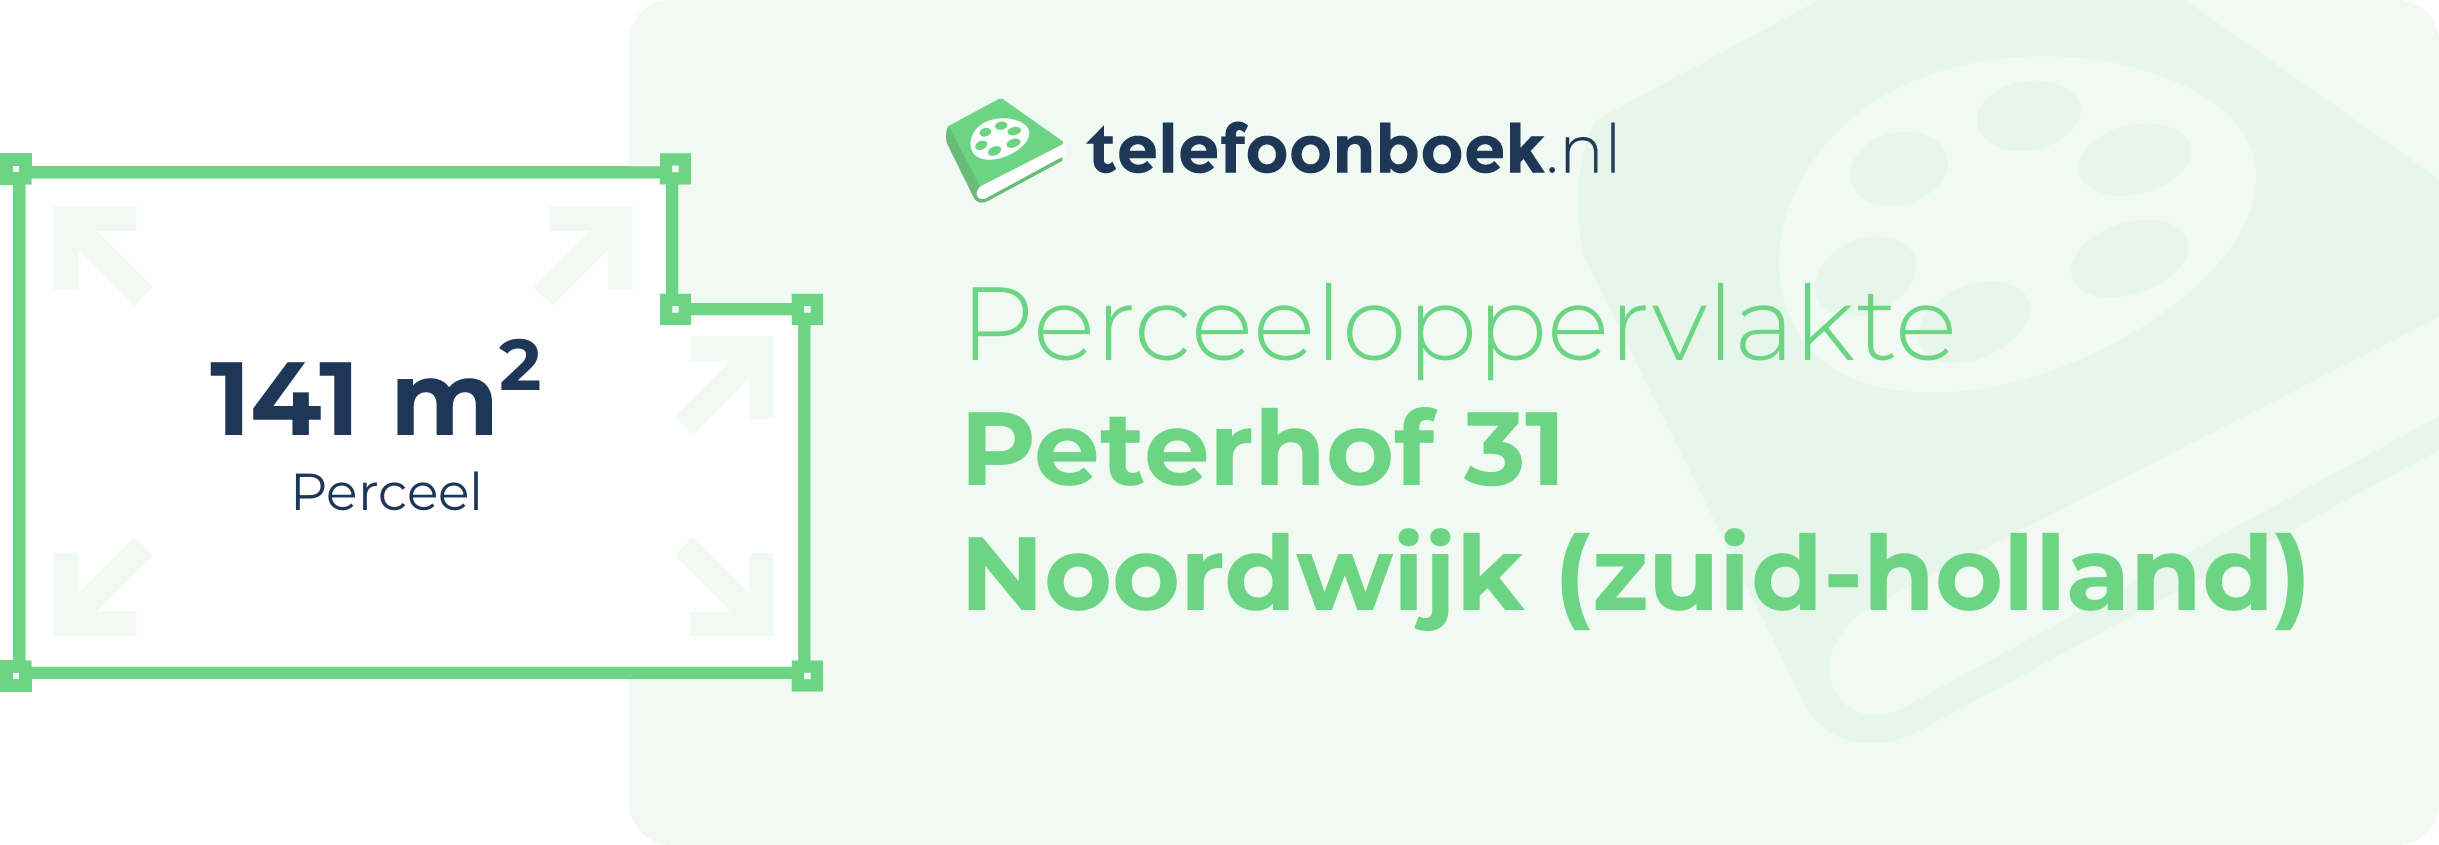 Perceeloppervlakte Peterhof 31 Noordwijk (Zuid-Holland)